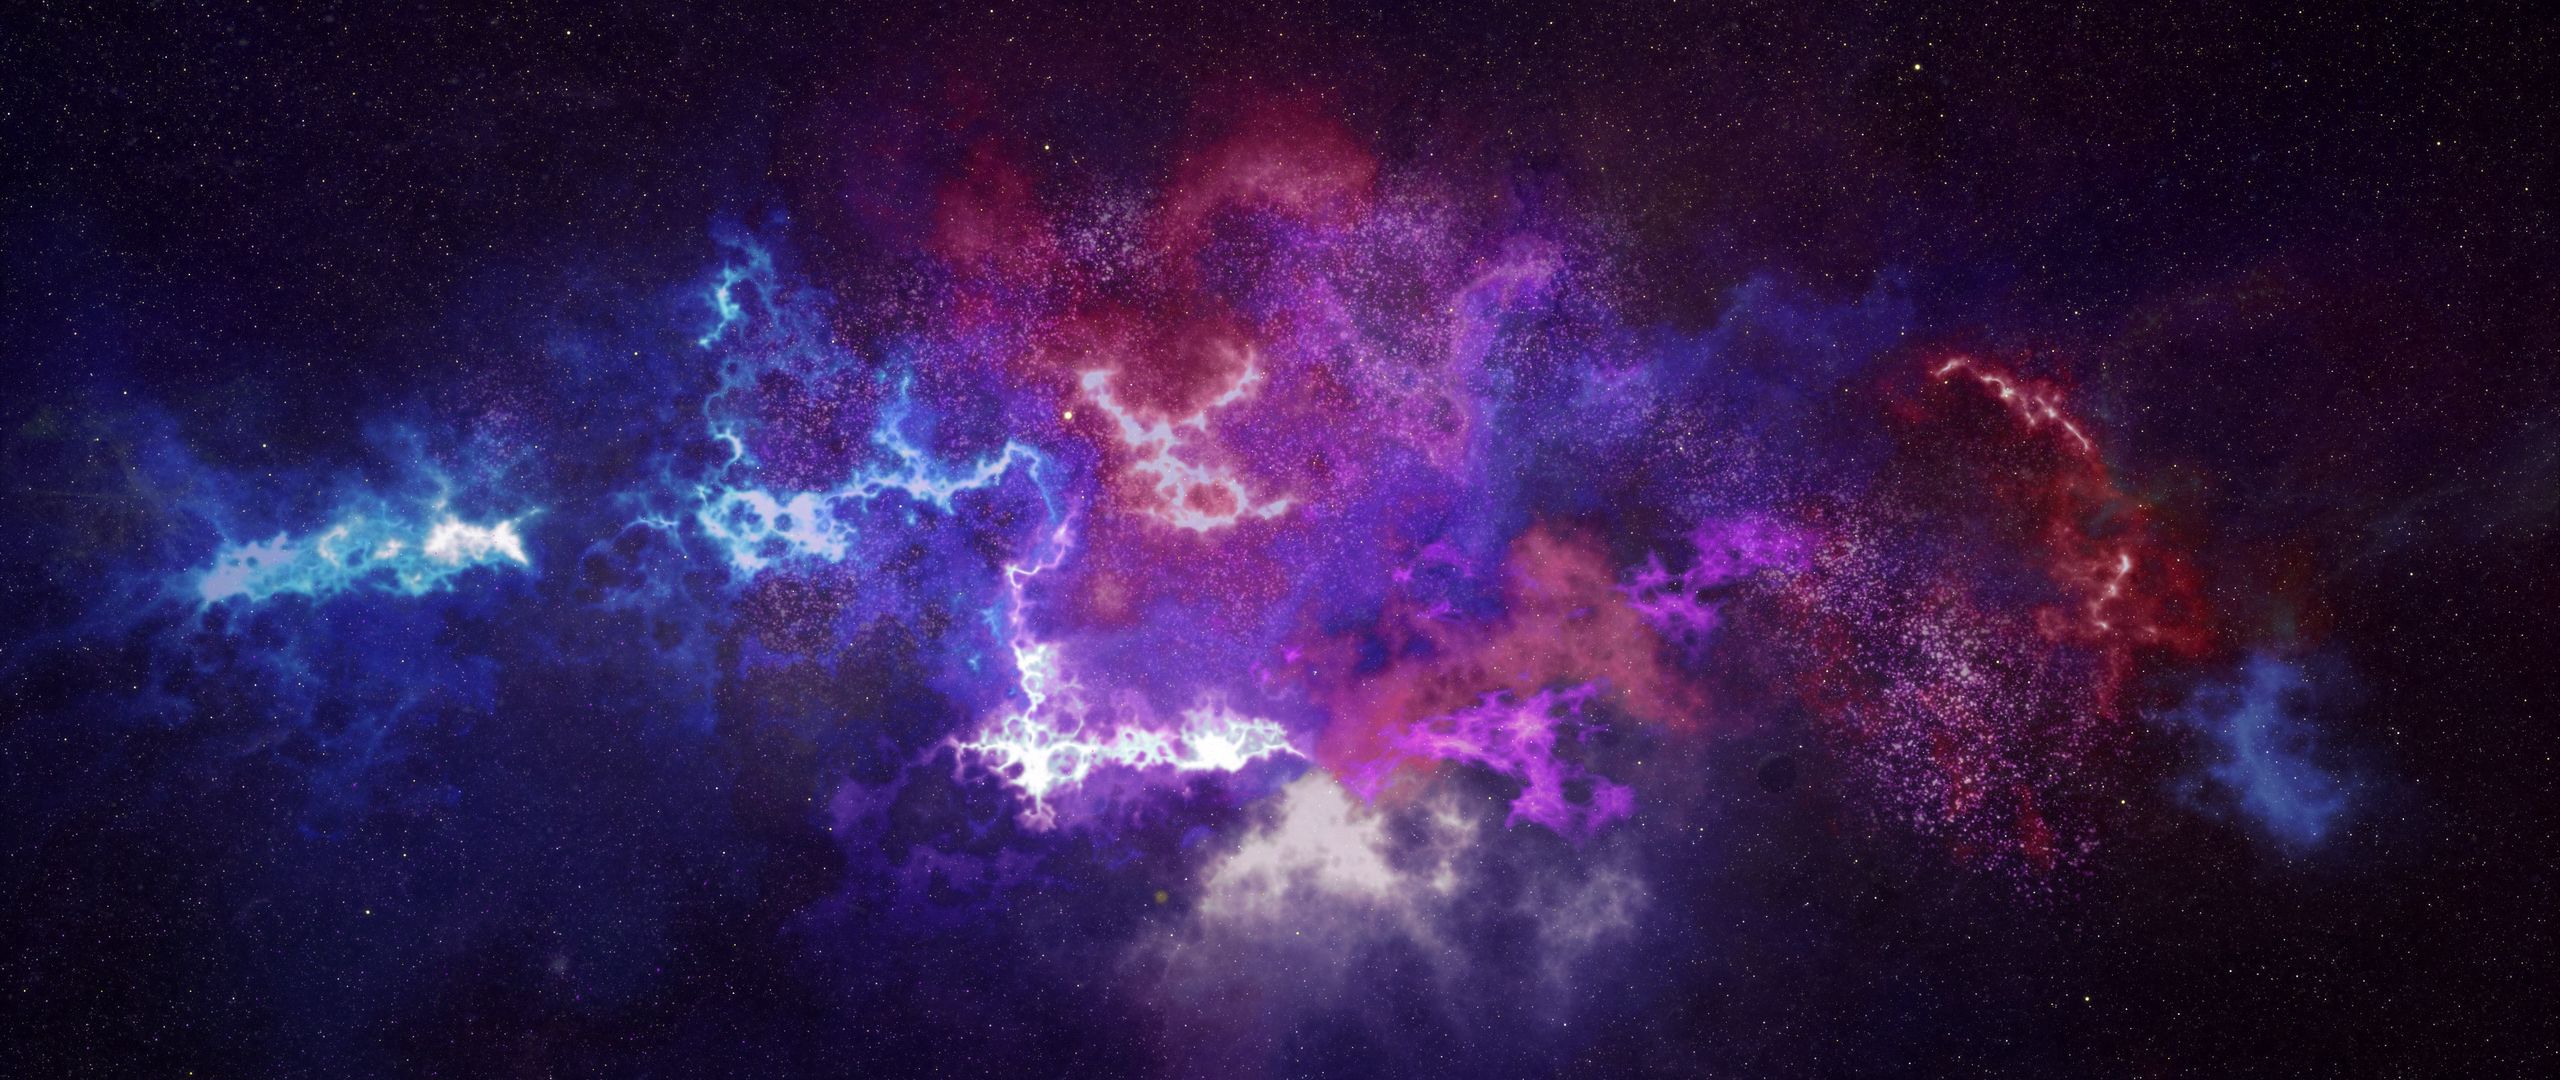 Bức hình nền vũ trụ galaxy chòm sao 2560x1080 chắc chắn sẽ khiến bạn bị thu hút ngay từ cái nhìn đầu tiên. Với chòm sao lấp lánh và những đám mây khói mịn màng, bạn sẽ có cảm giác như lạc vào một thế giới cổ tích, đầy ma mị và lãng mạn. Hãy cùng xem và cảm nhận nhé!